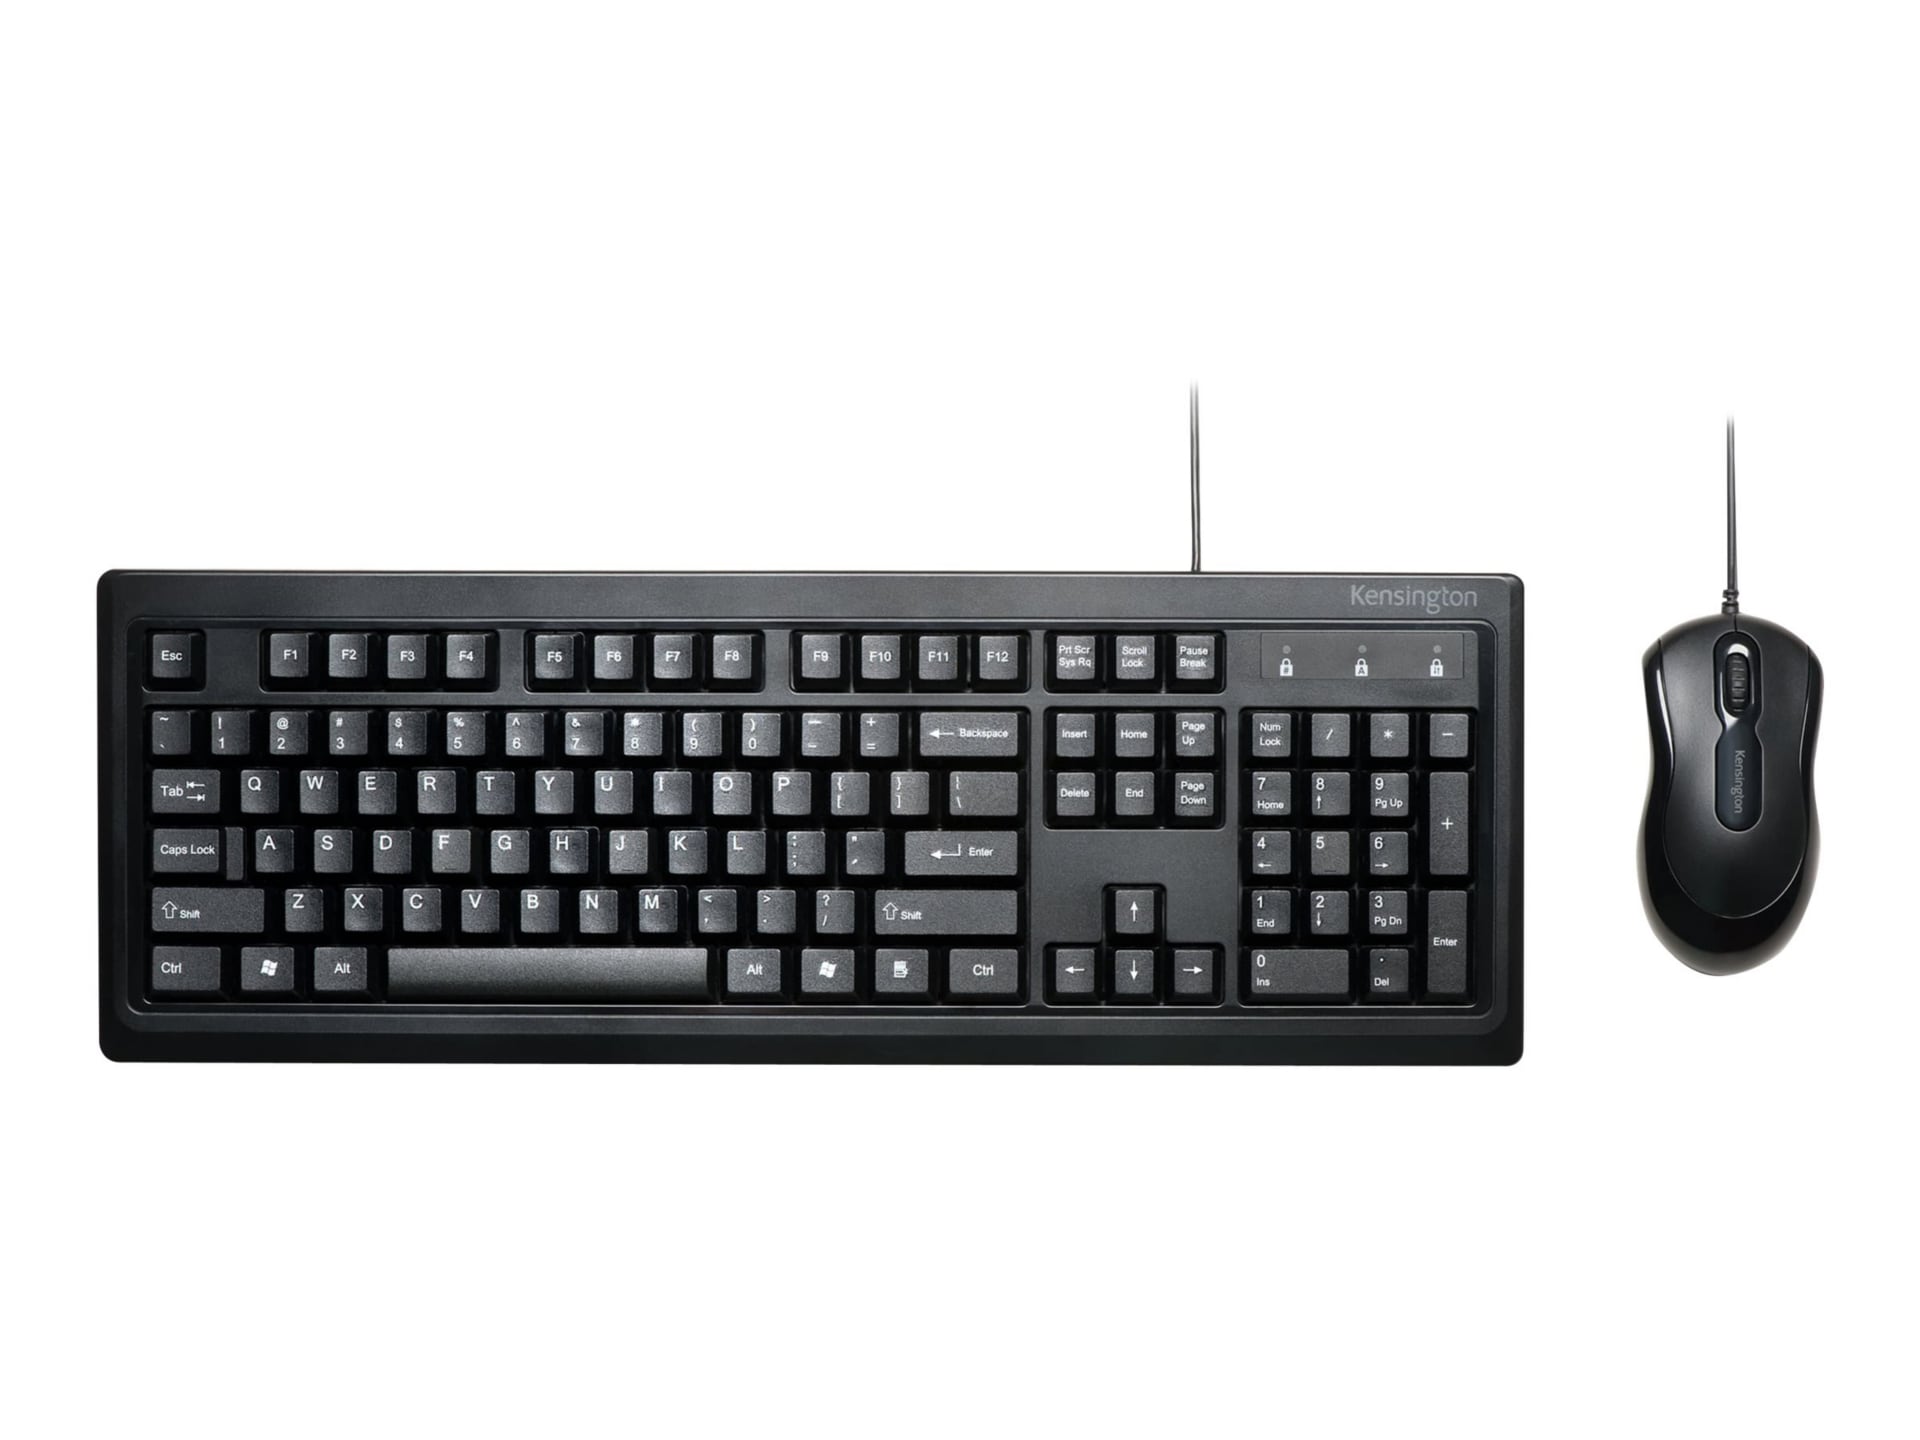 Kensington Keyboard for Life Desktop Set - keyboard and mouse set - black I